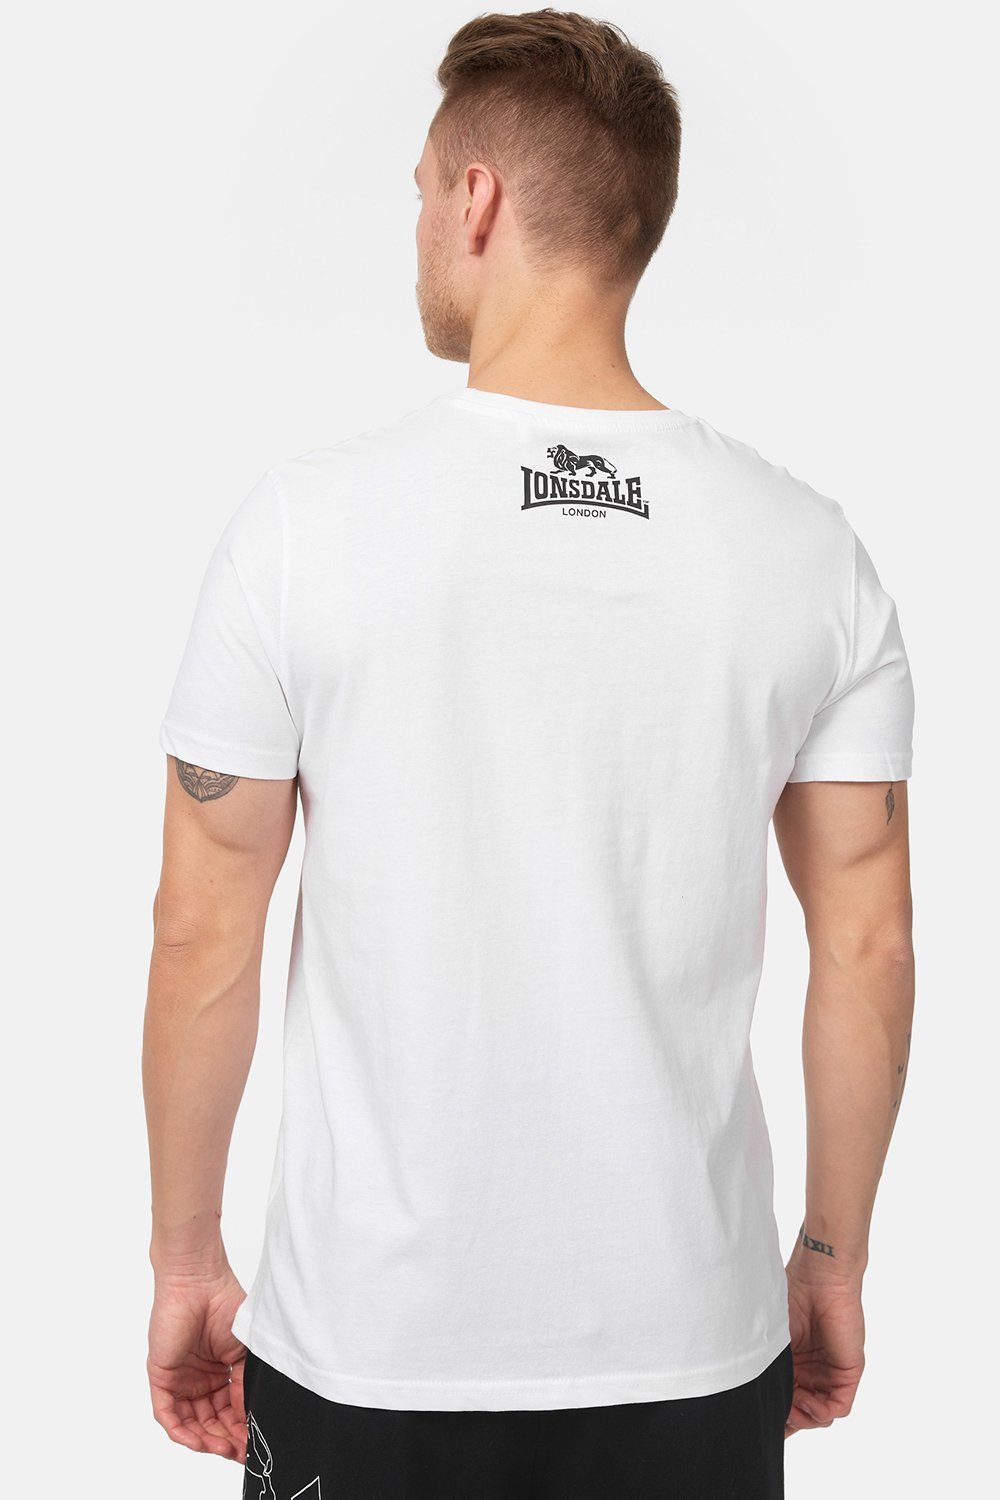 Lonsdale T-Shirt LOGO White